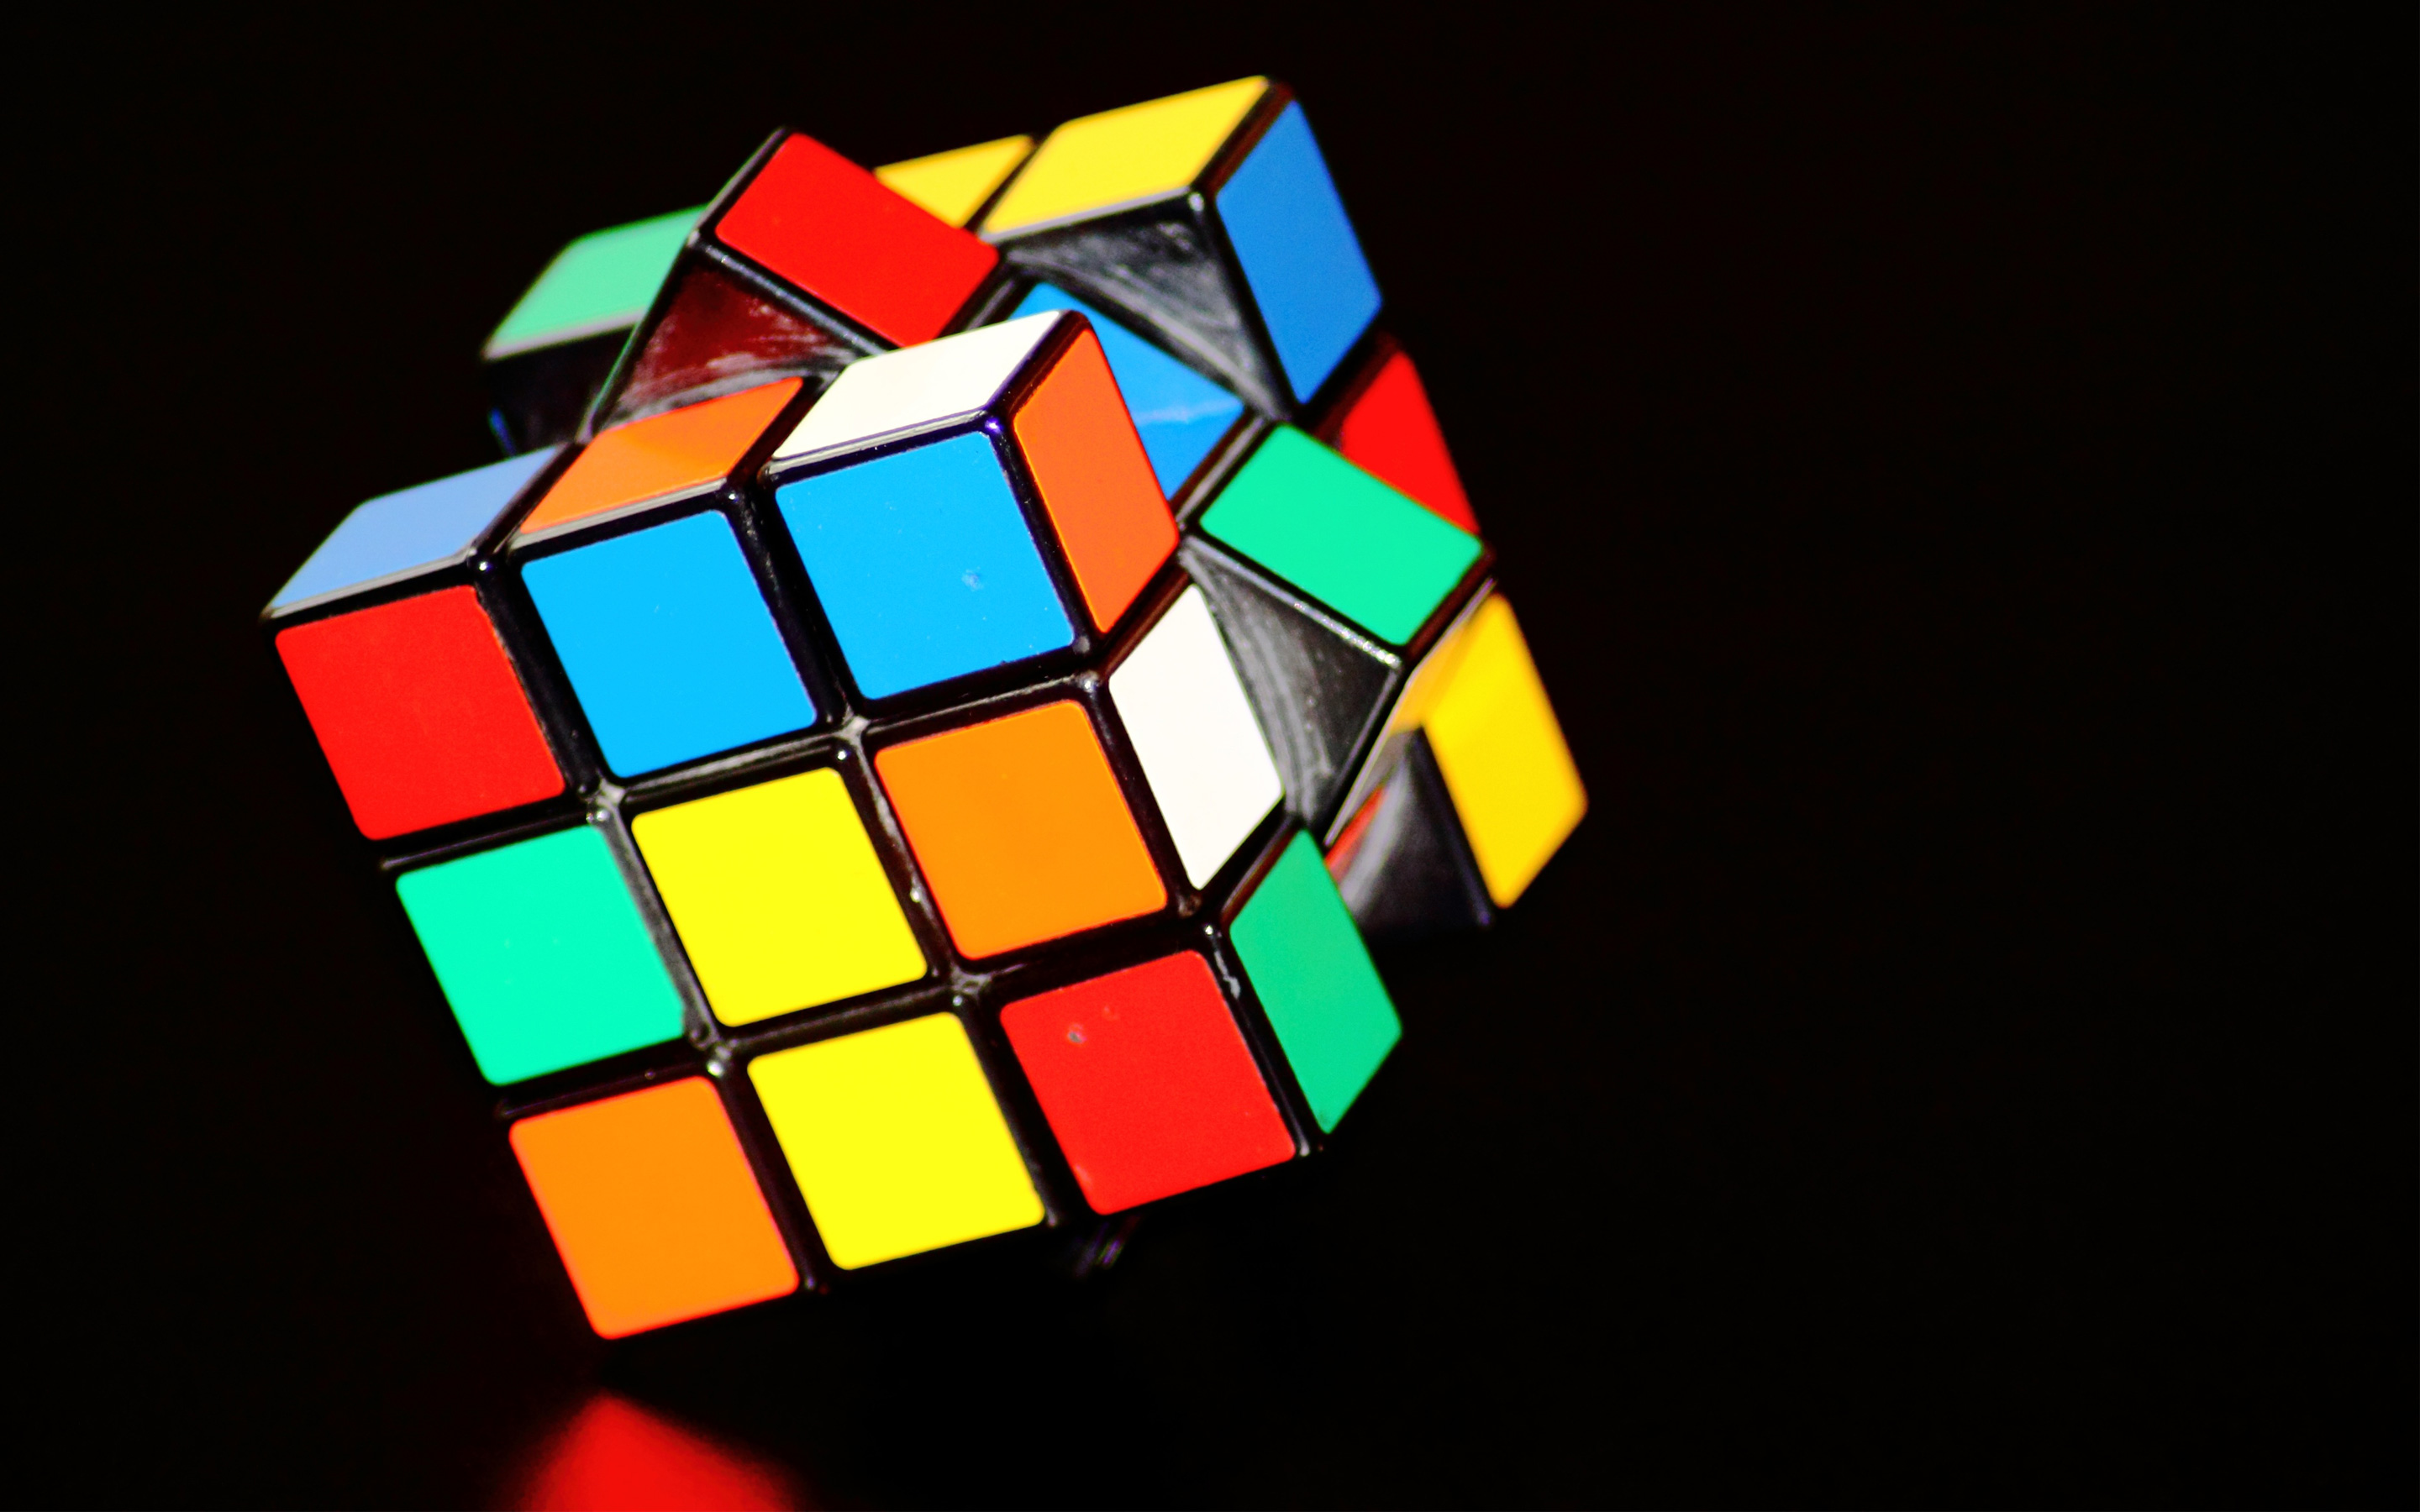 Rubik's Cube3945913339 - Rubik's Cube - Rubik's, LOL, Cube